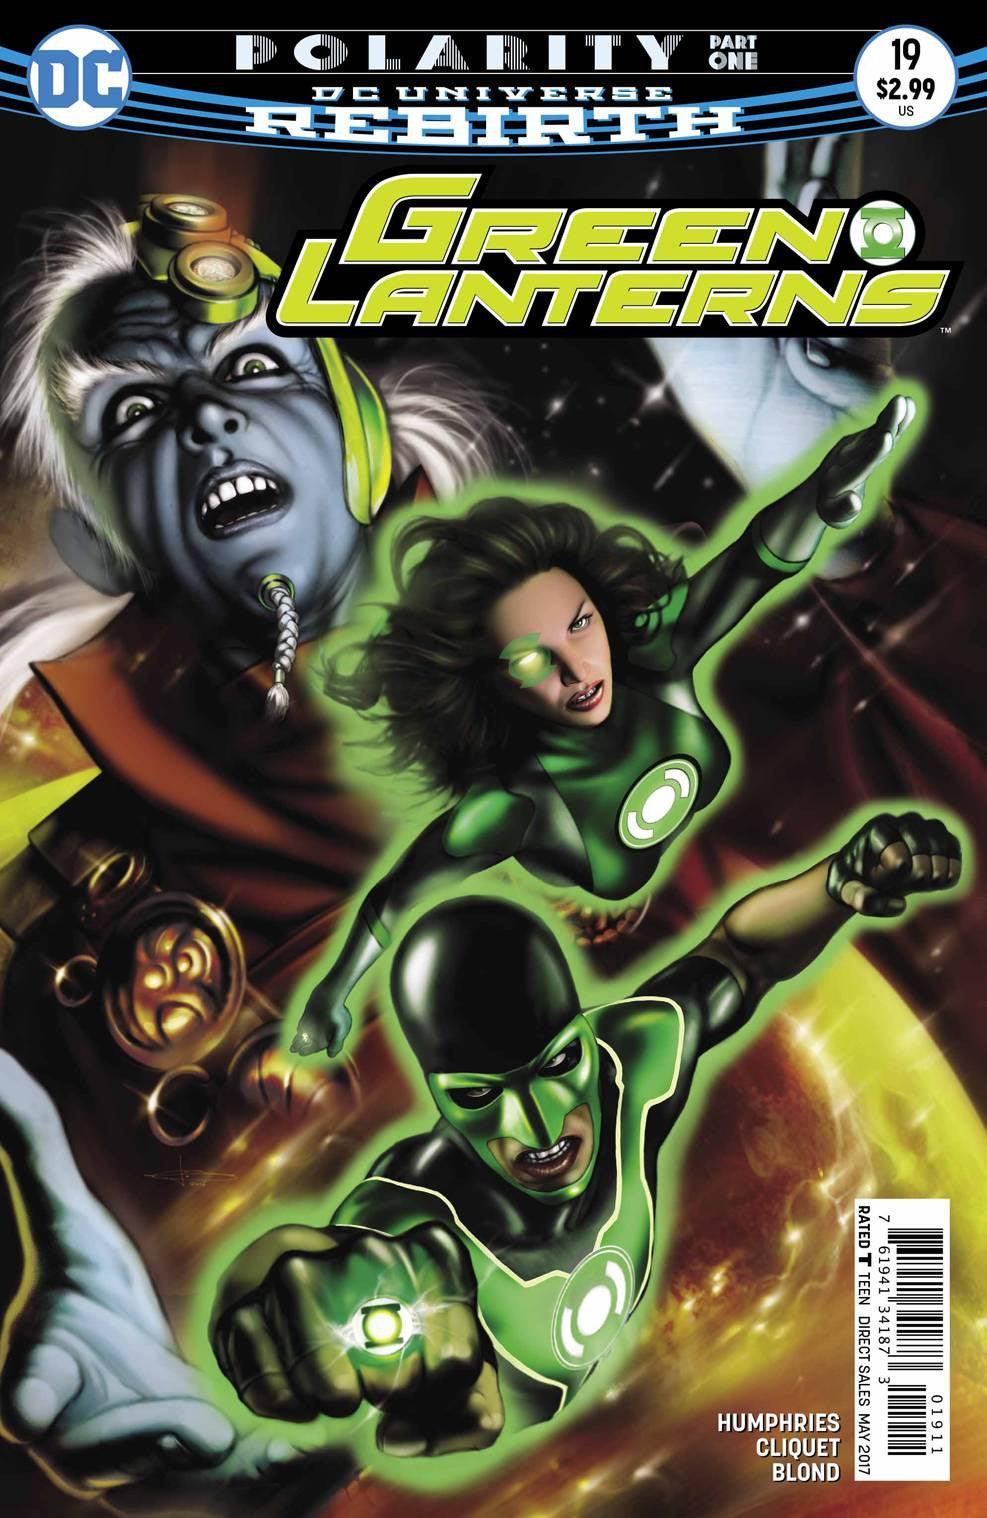 GREEN LANTERNS #19 - Kings Comics